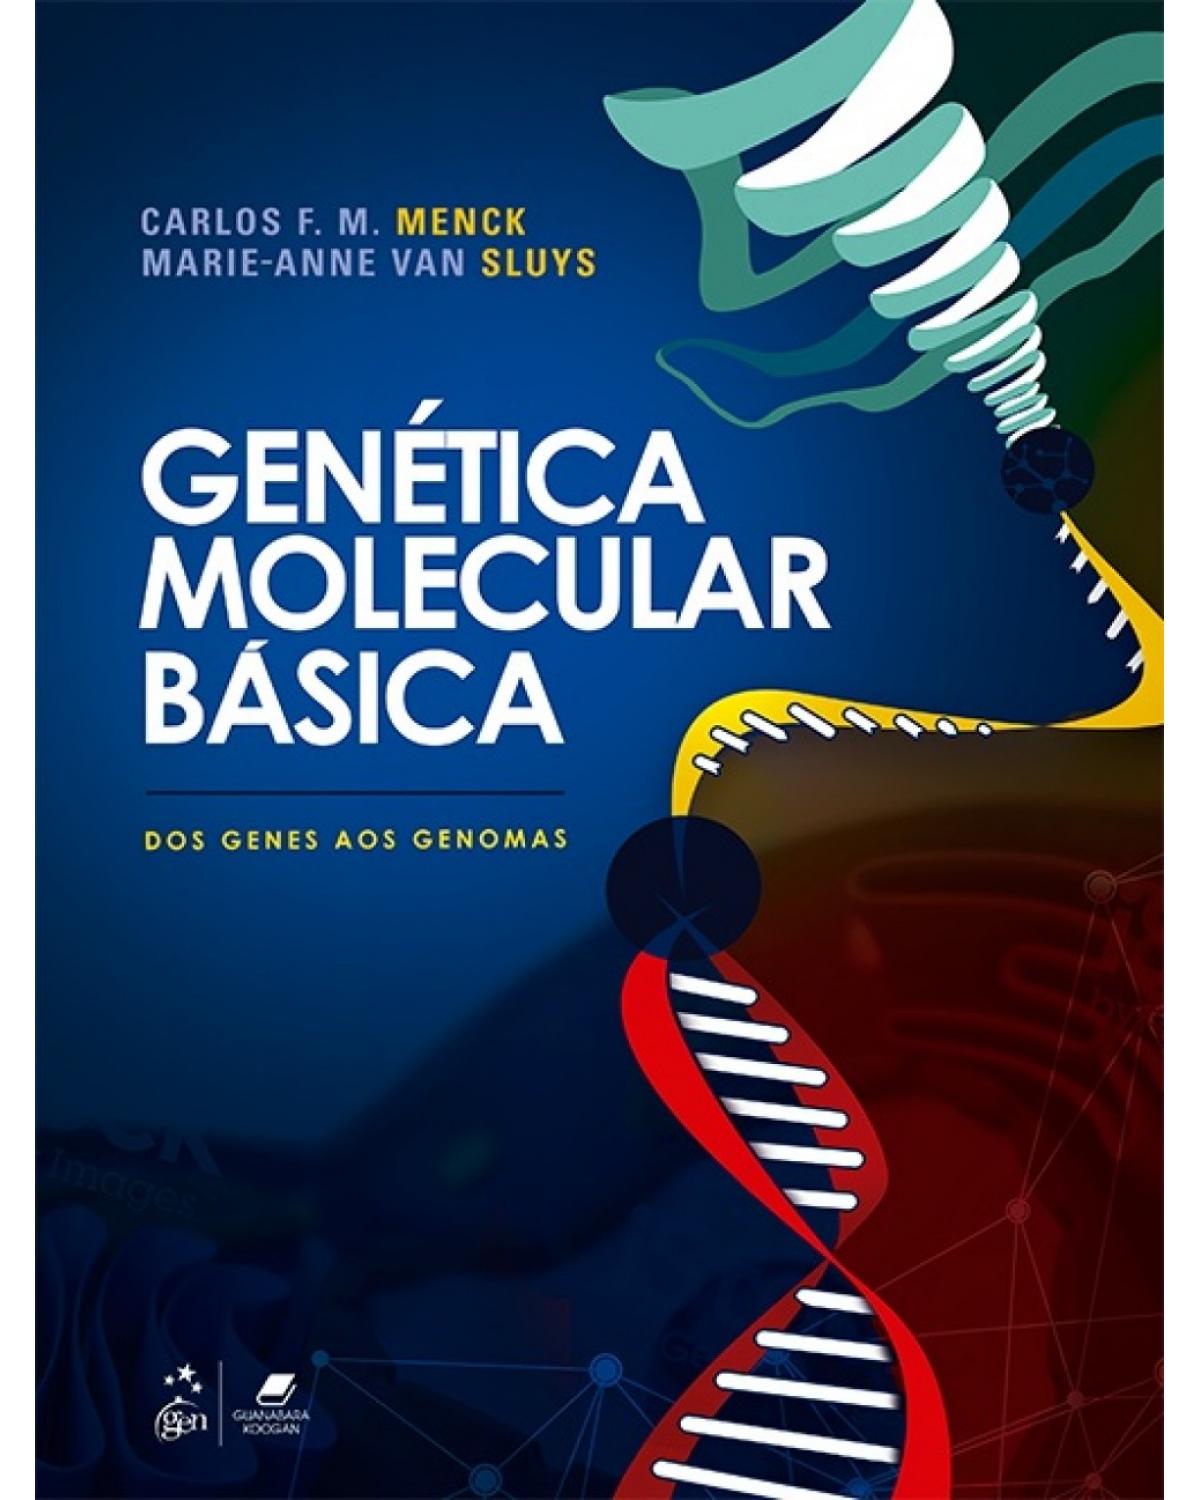 Genética molecular básica - Dos genes aos genomas - 1ª Edição | 2017